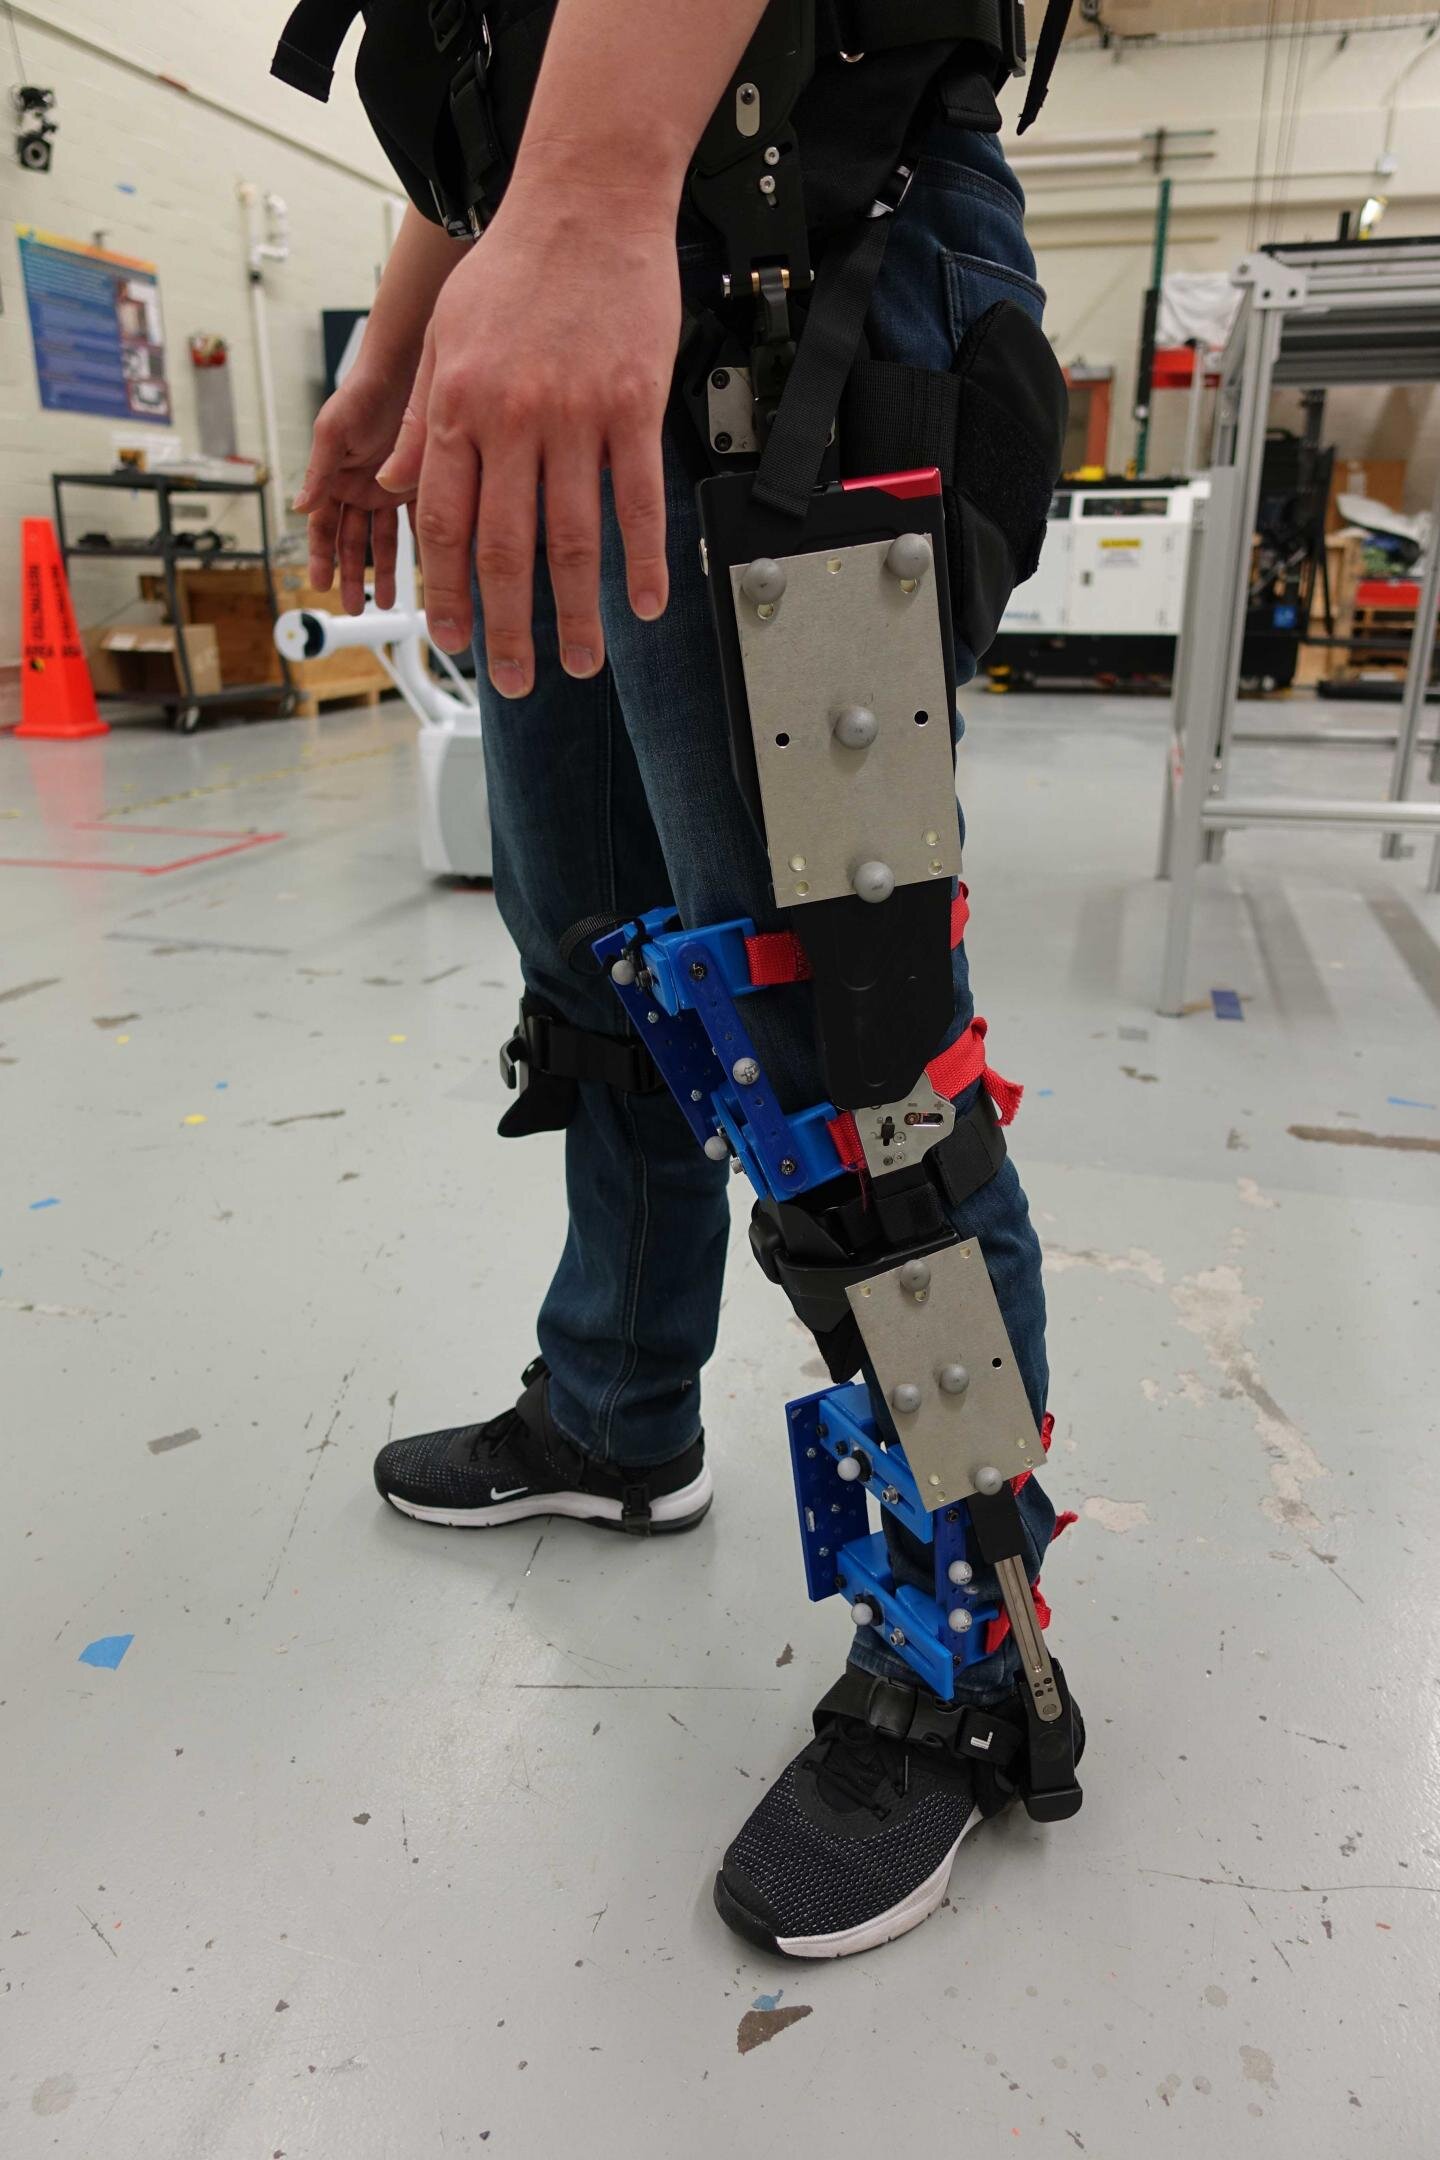 ایجاد روشی جدید برای بررسی تناسب اسکلت های بیرونی رباتیک با بدن انسان